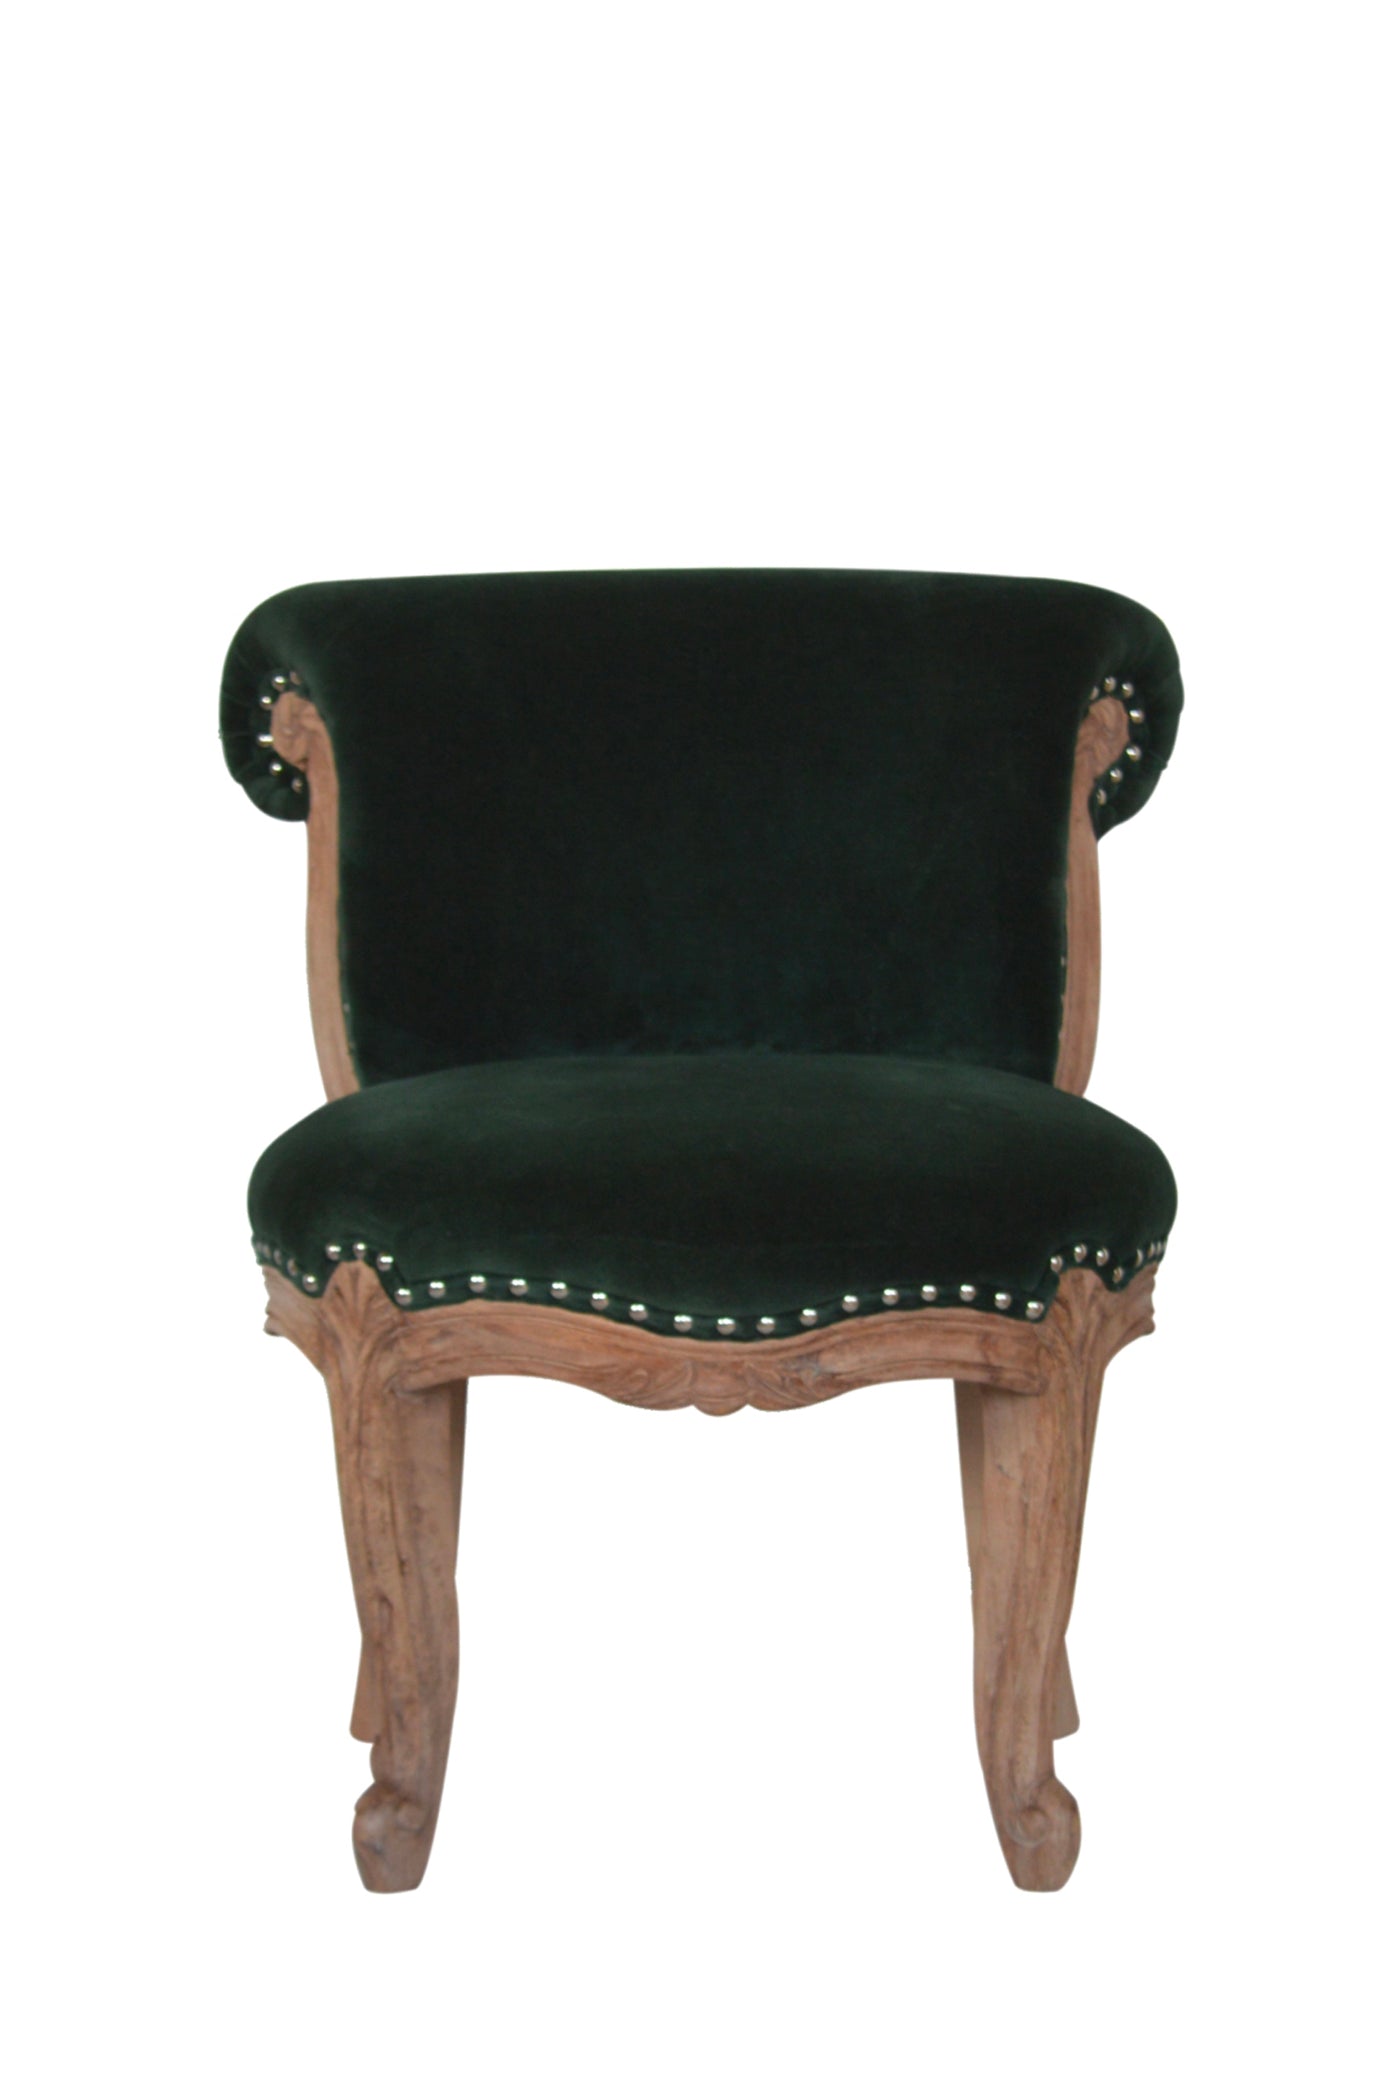 Versailles - Chair Studded Green